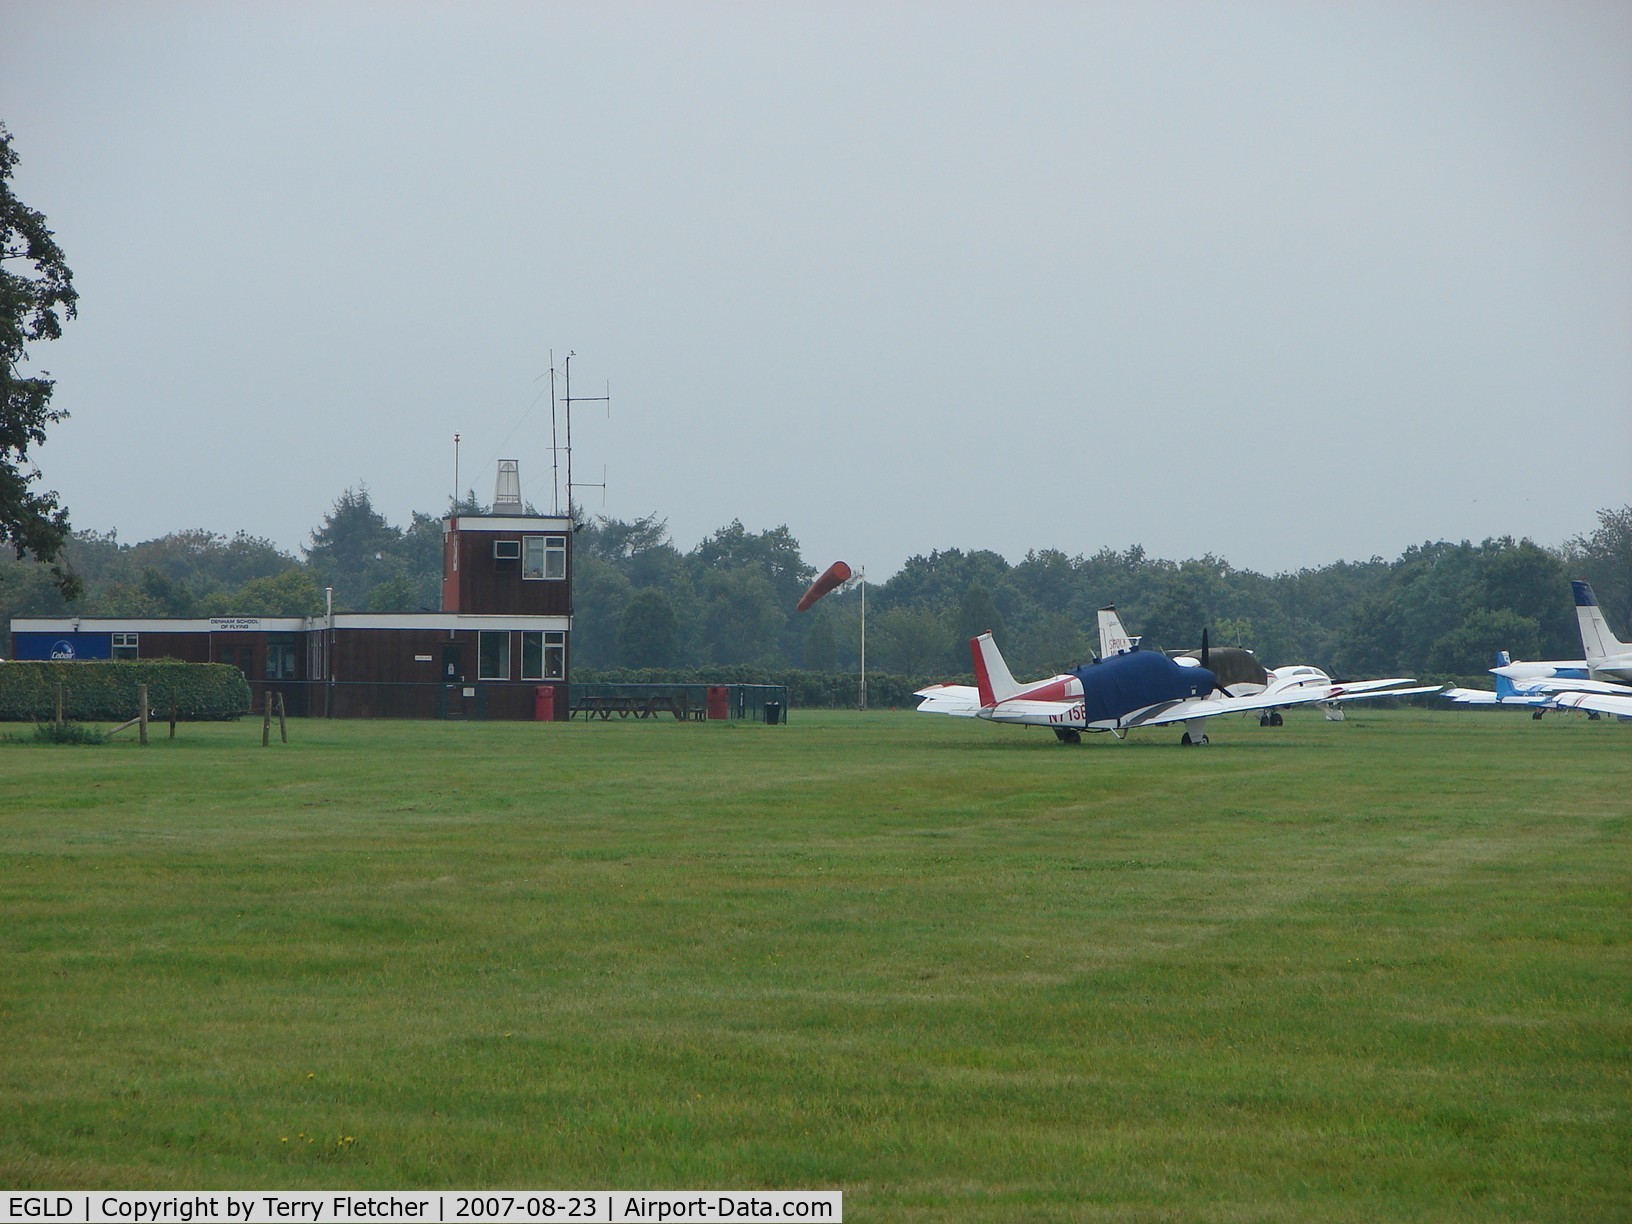 Denham Aerodrome Airport, Gerrards Cross, England United Kingdom (EGLD) - Denham Control Tower